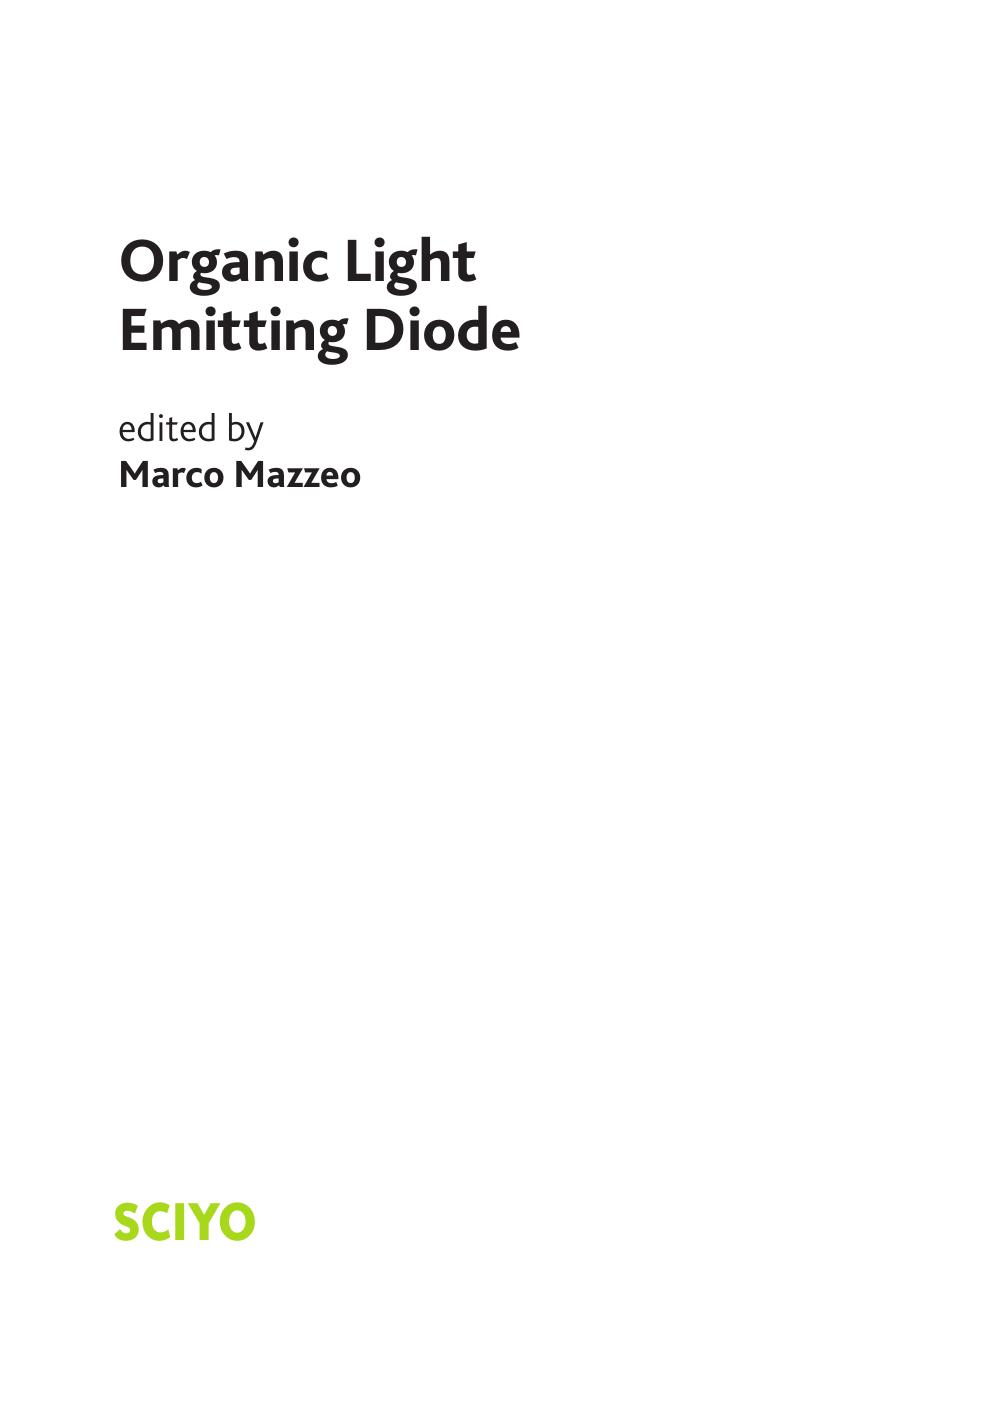 Organic Light Emitting Diode 2010.pdf